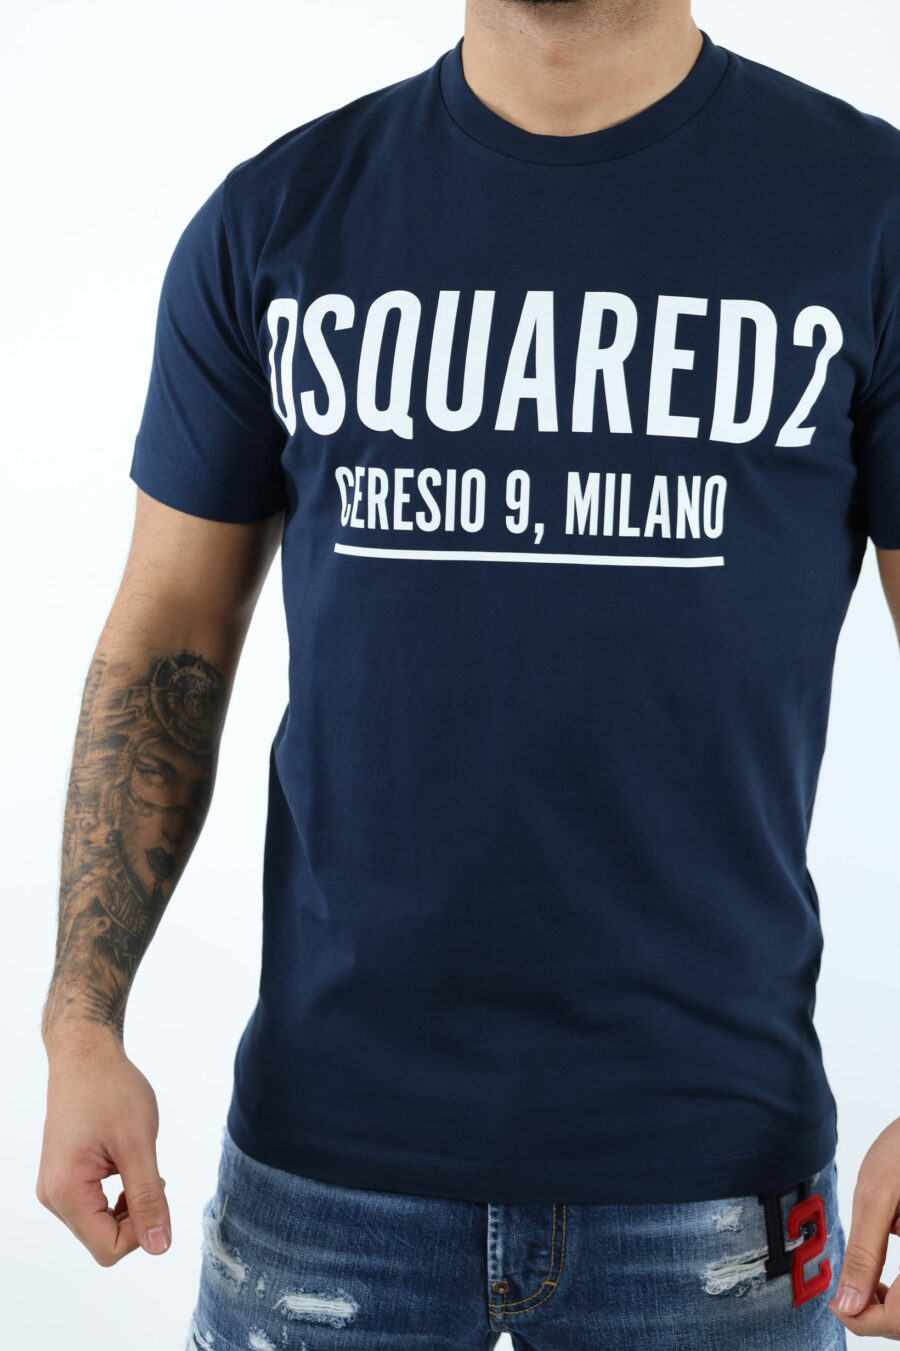 T-shirt bleu foncé avec maxilogo "ceresio 9, milano" - 106848